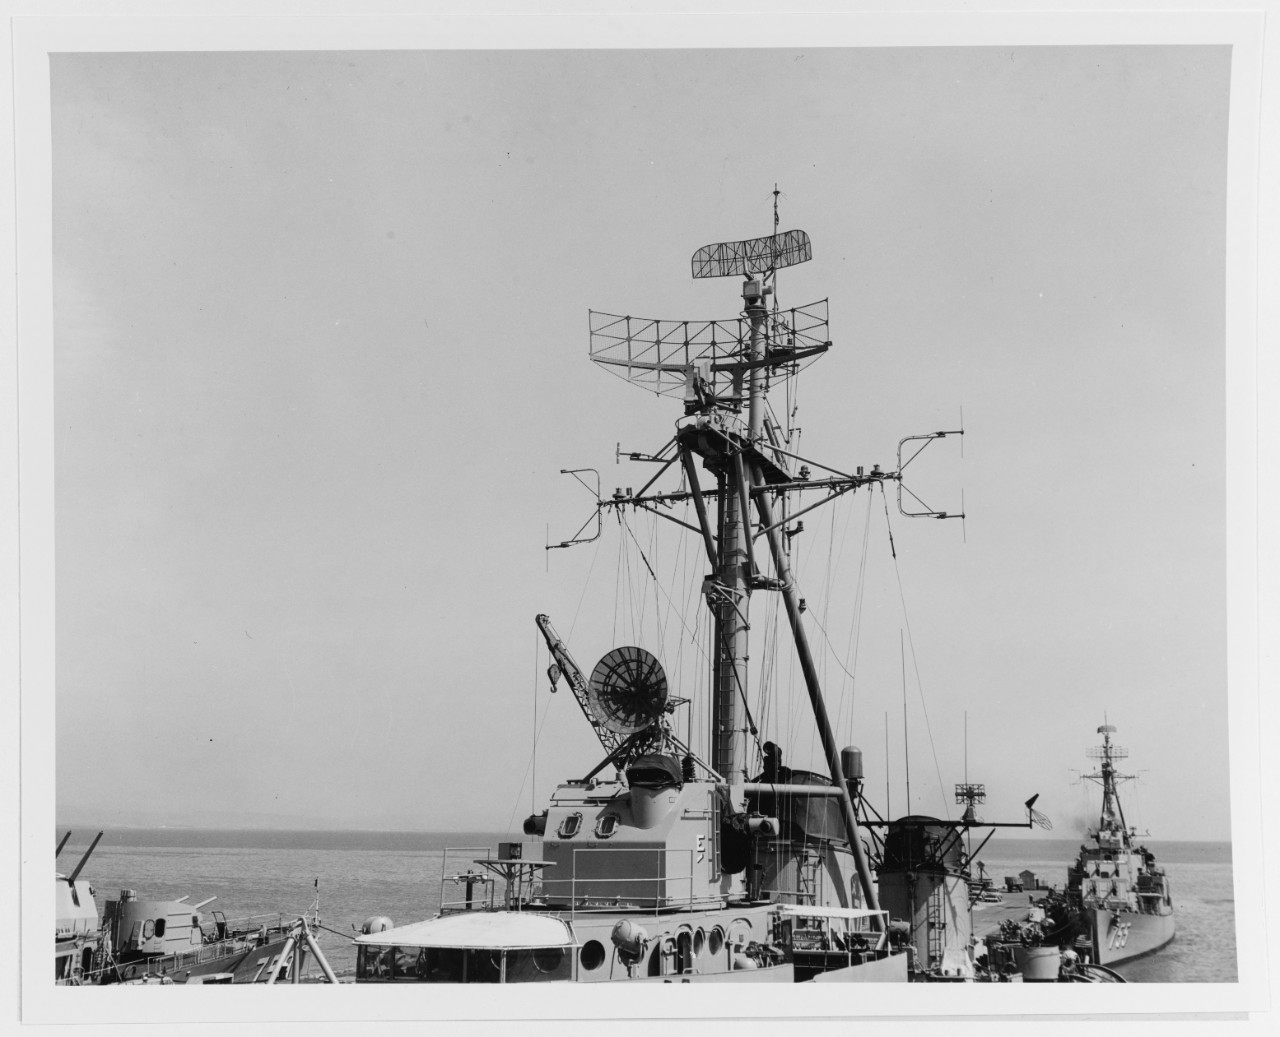 CT Alagoas - D 36 / PWAL, ex PXAL - (Former USS Buck - DD 761